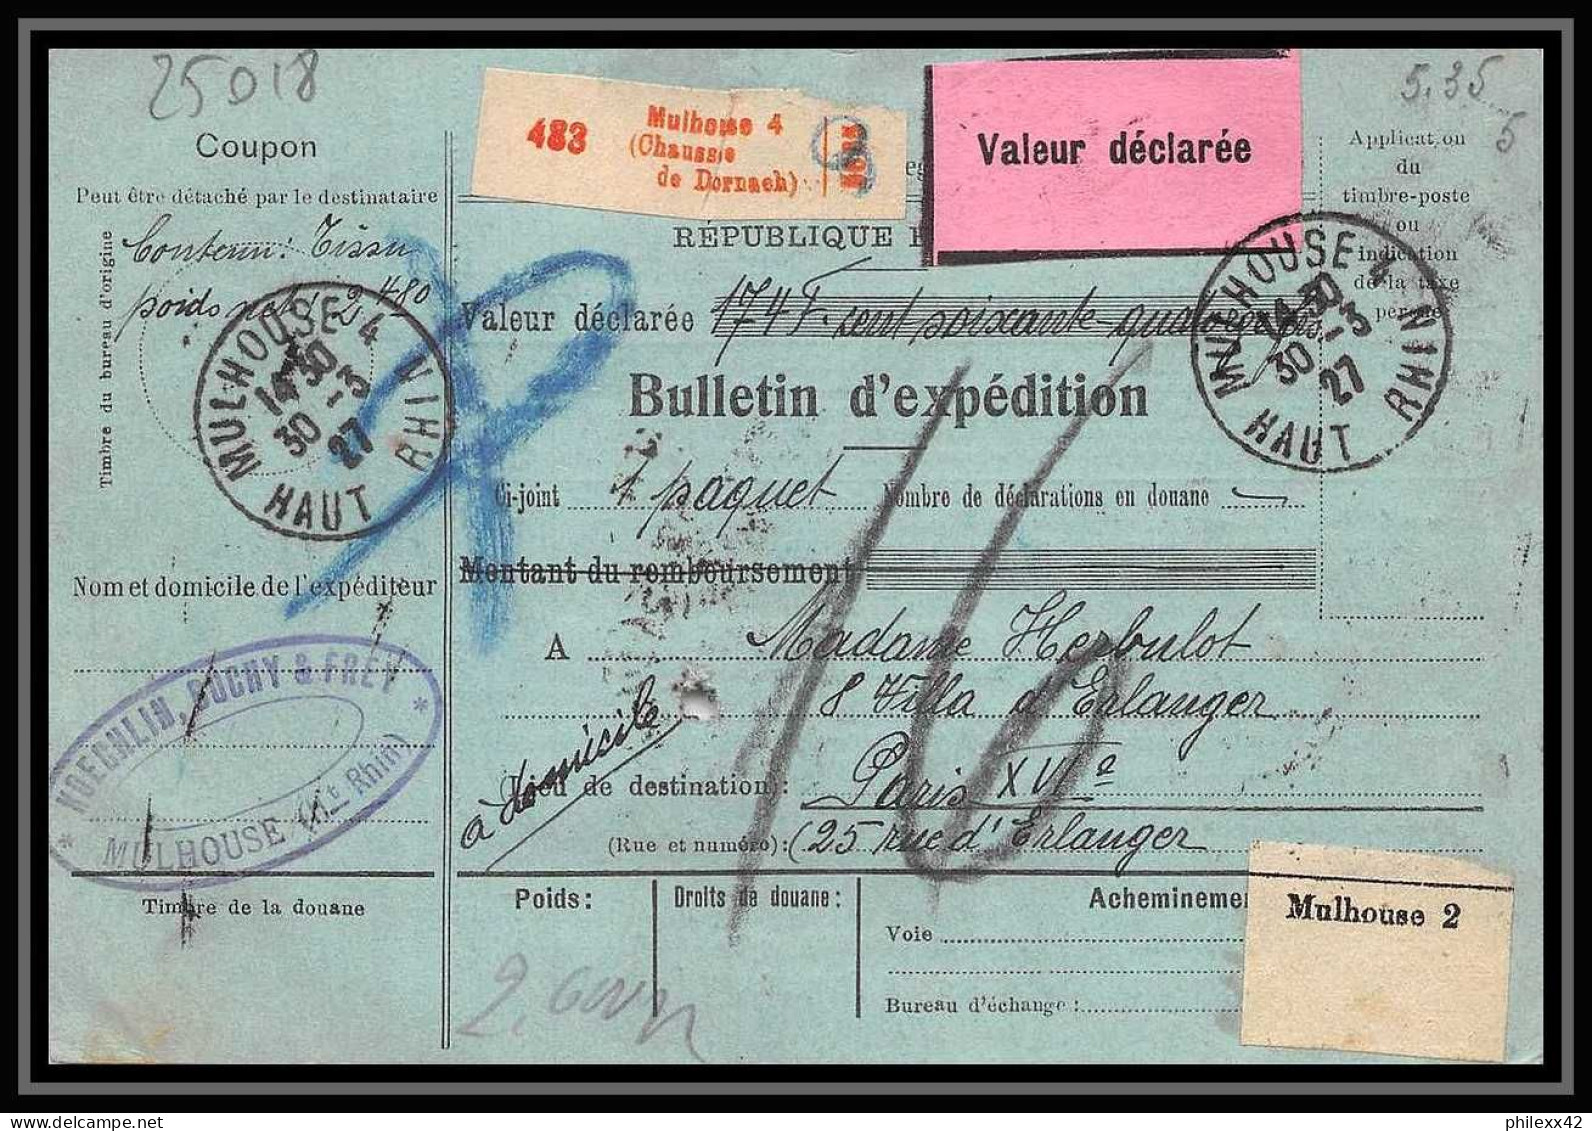 25018 Bulletin D'expédition France Colis Postaux Fiscal Haut Rhin 1927 Guebwiller Semeuse Merson 123 Valeur Déclarée - Covers & Documents